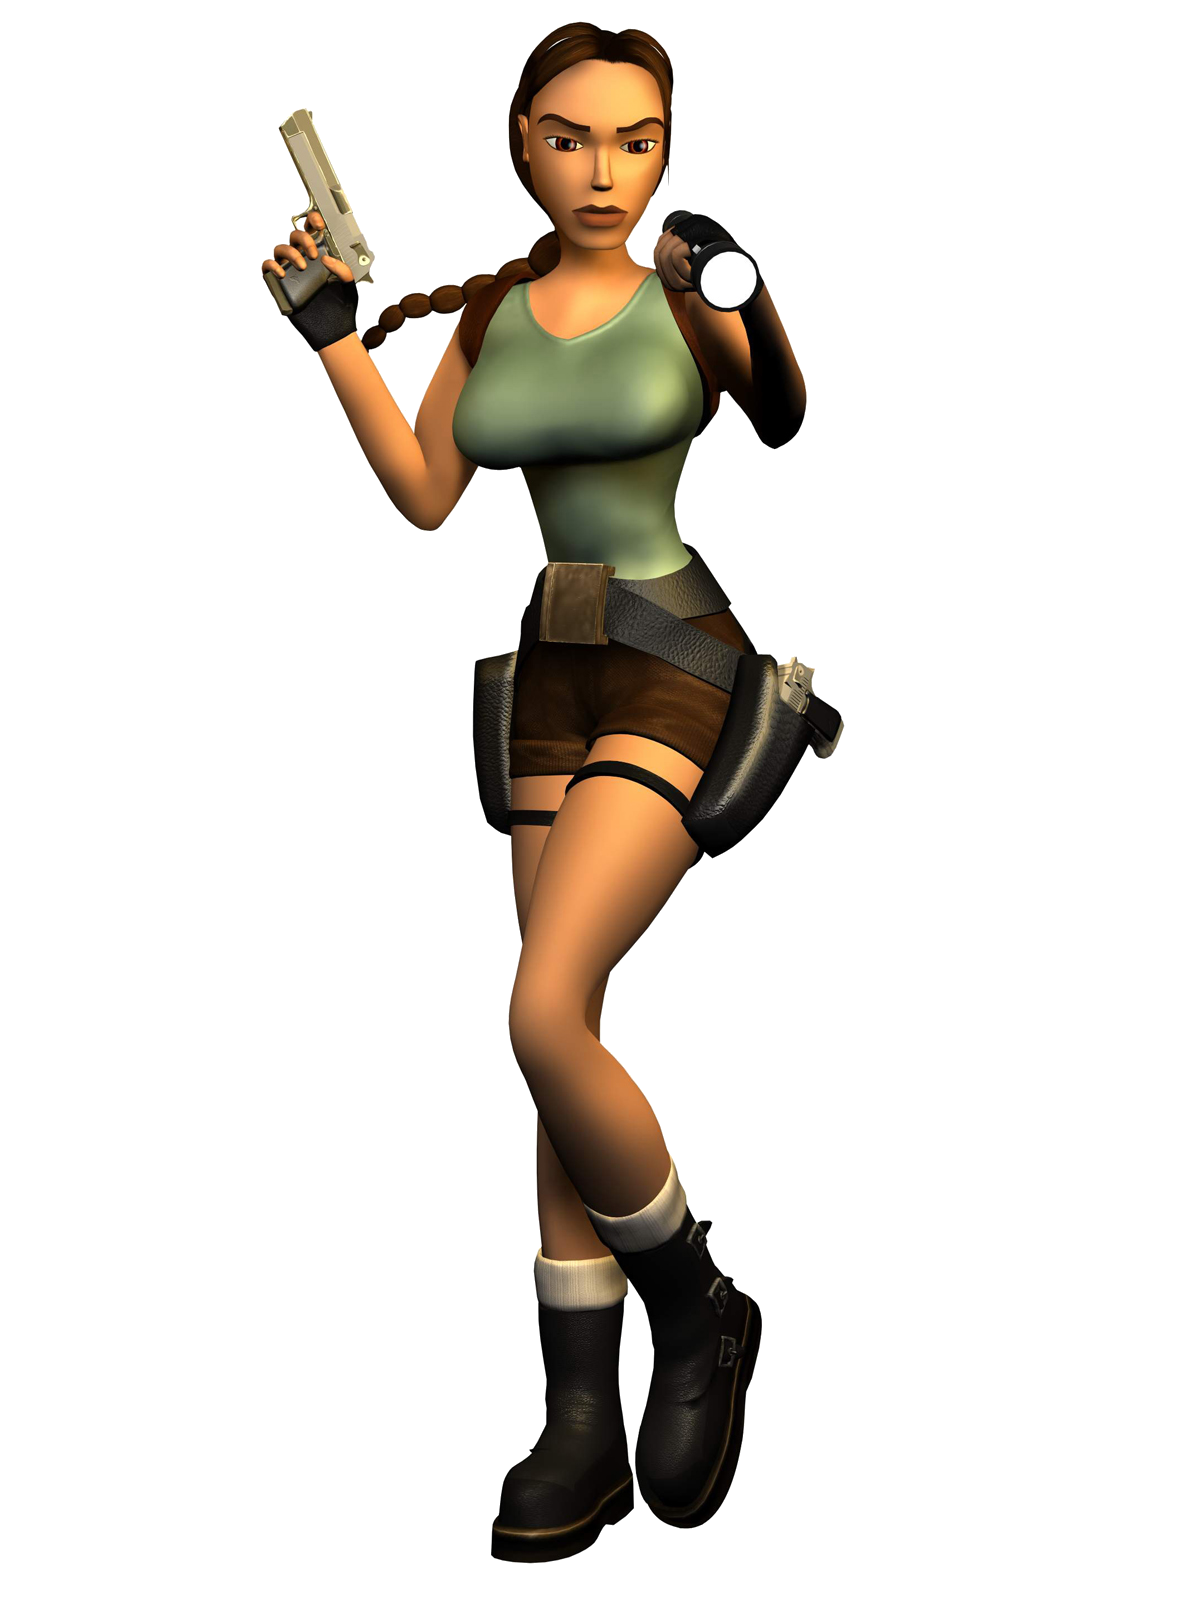 Tomb Raider Transparent Backg